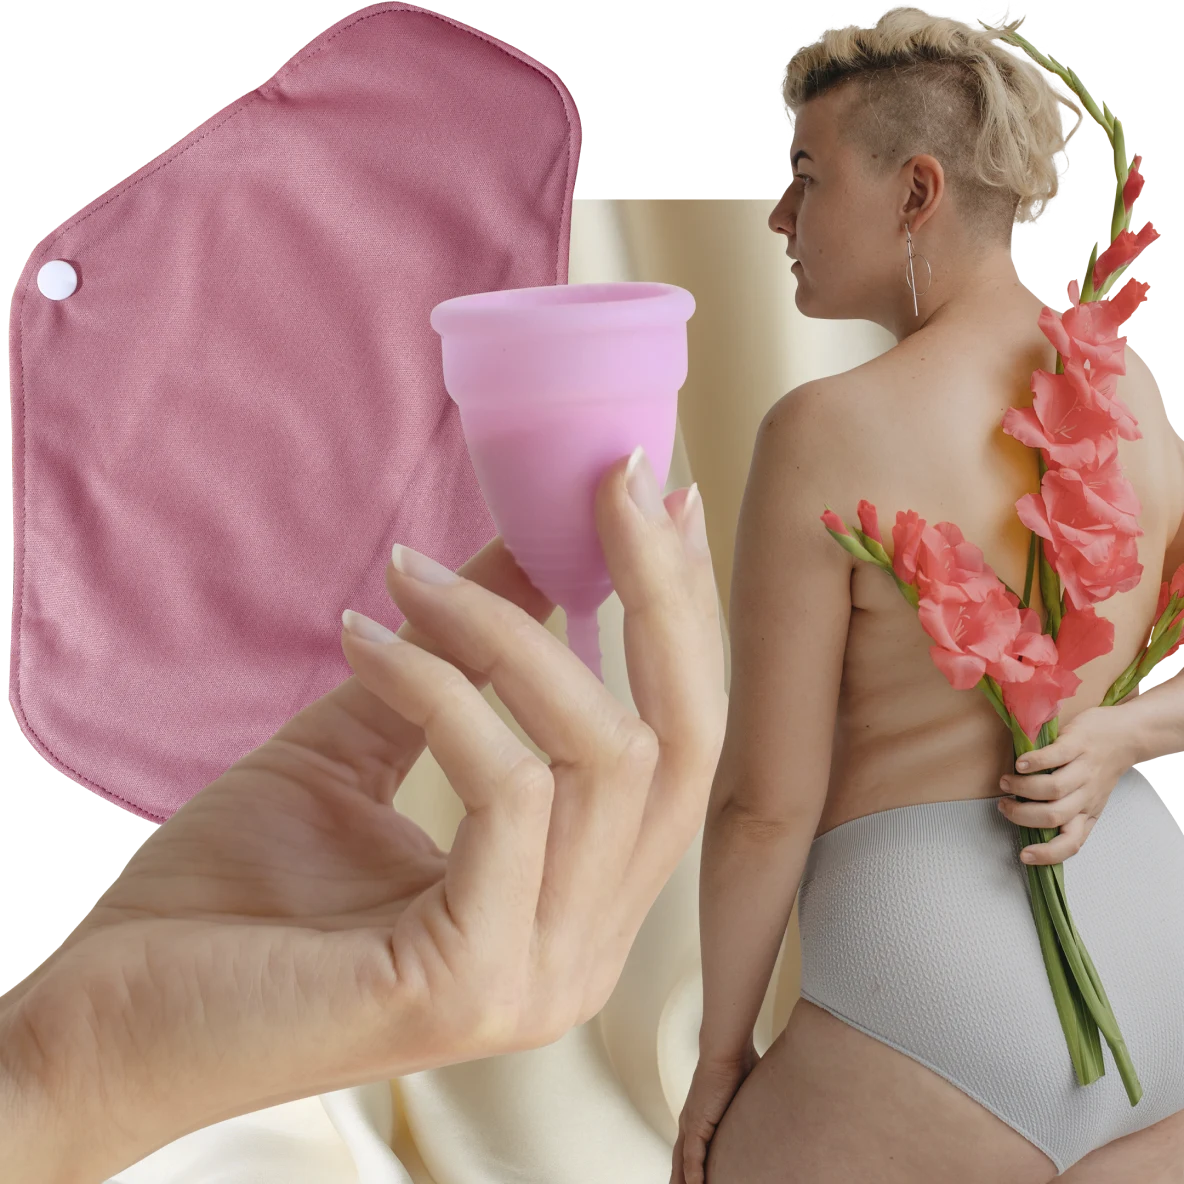 Eine weiße Hand, die eine rosafarbene Menstruationstasse hält. Eine rosafarbene Stoffbinde auf der linken Seite. Rechts eine weiße Frau mit kurzem blonden Haar, die rosarote Blumen hinter ihrem Rücken hält.